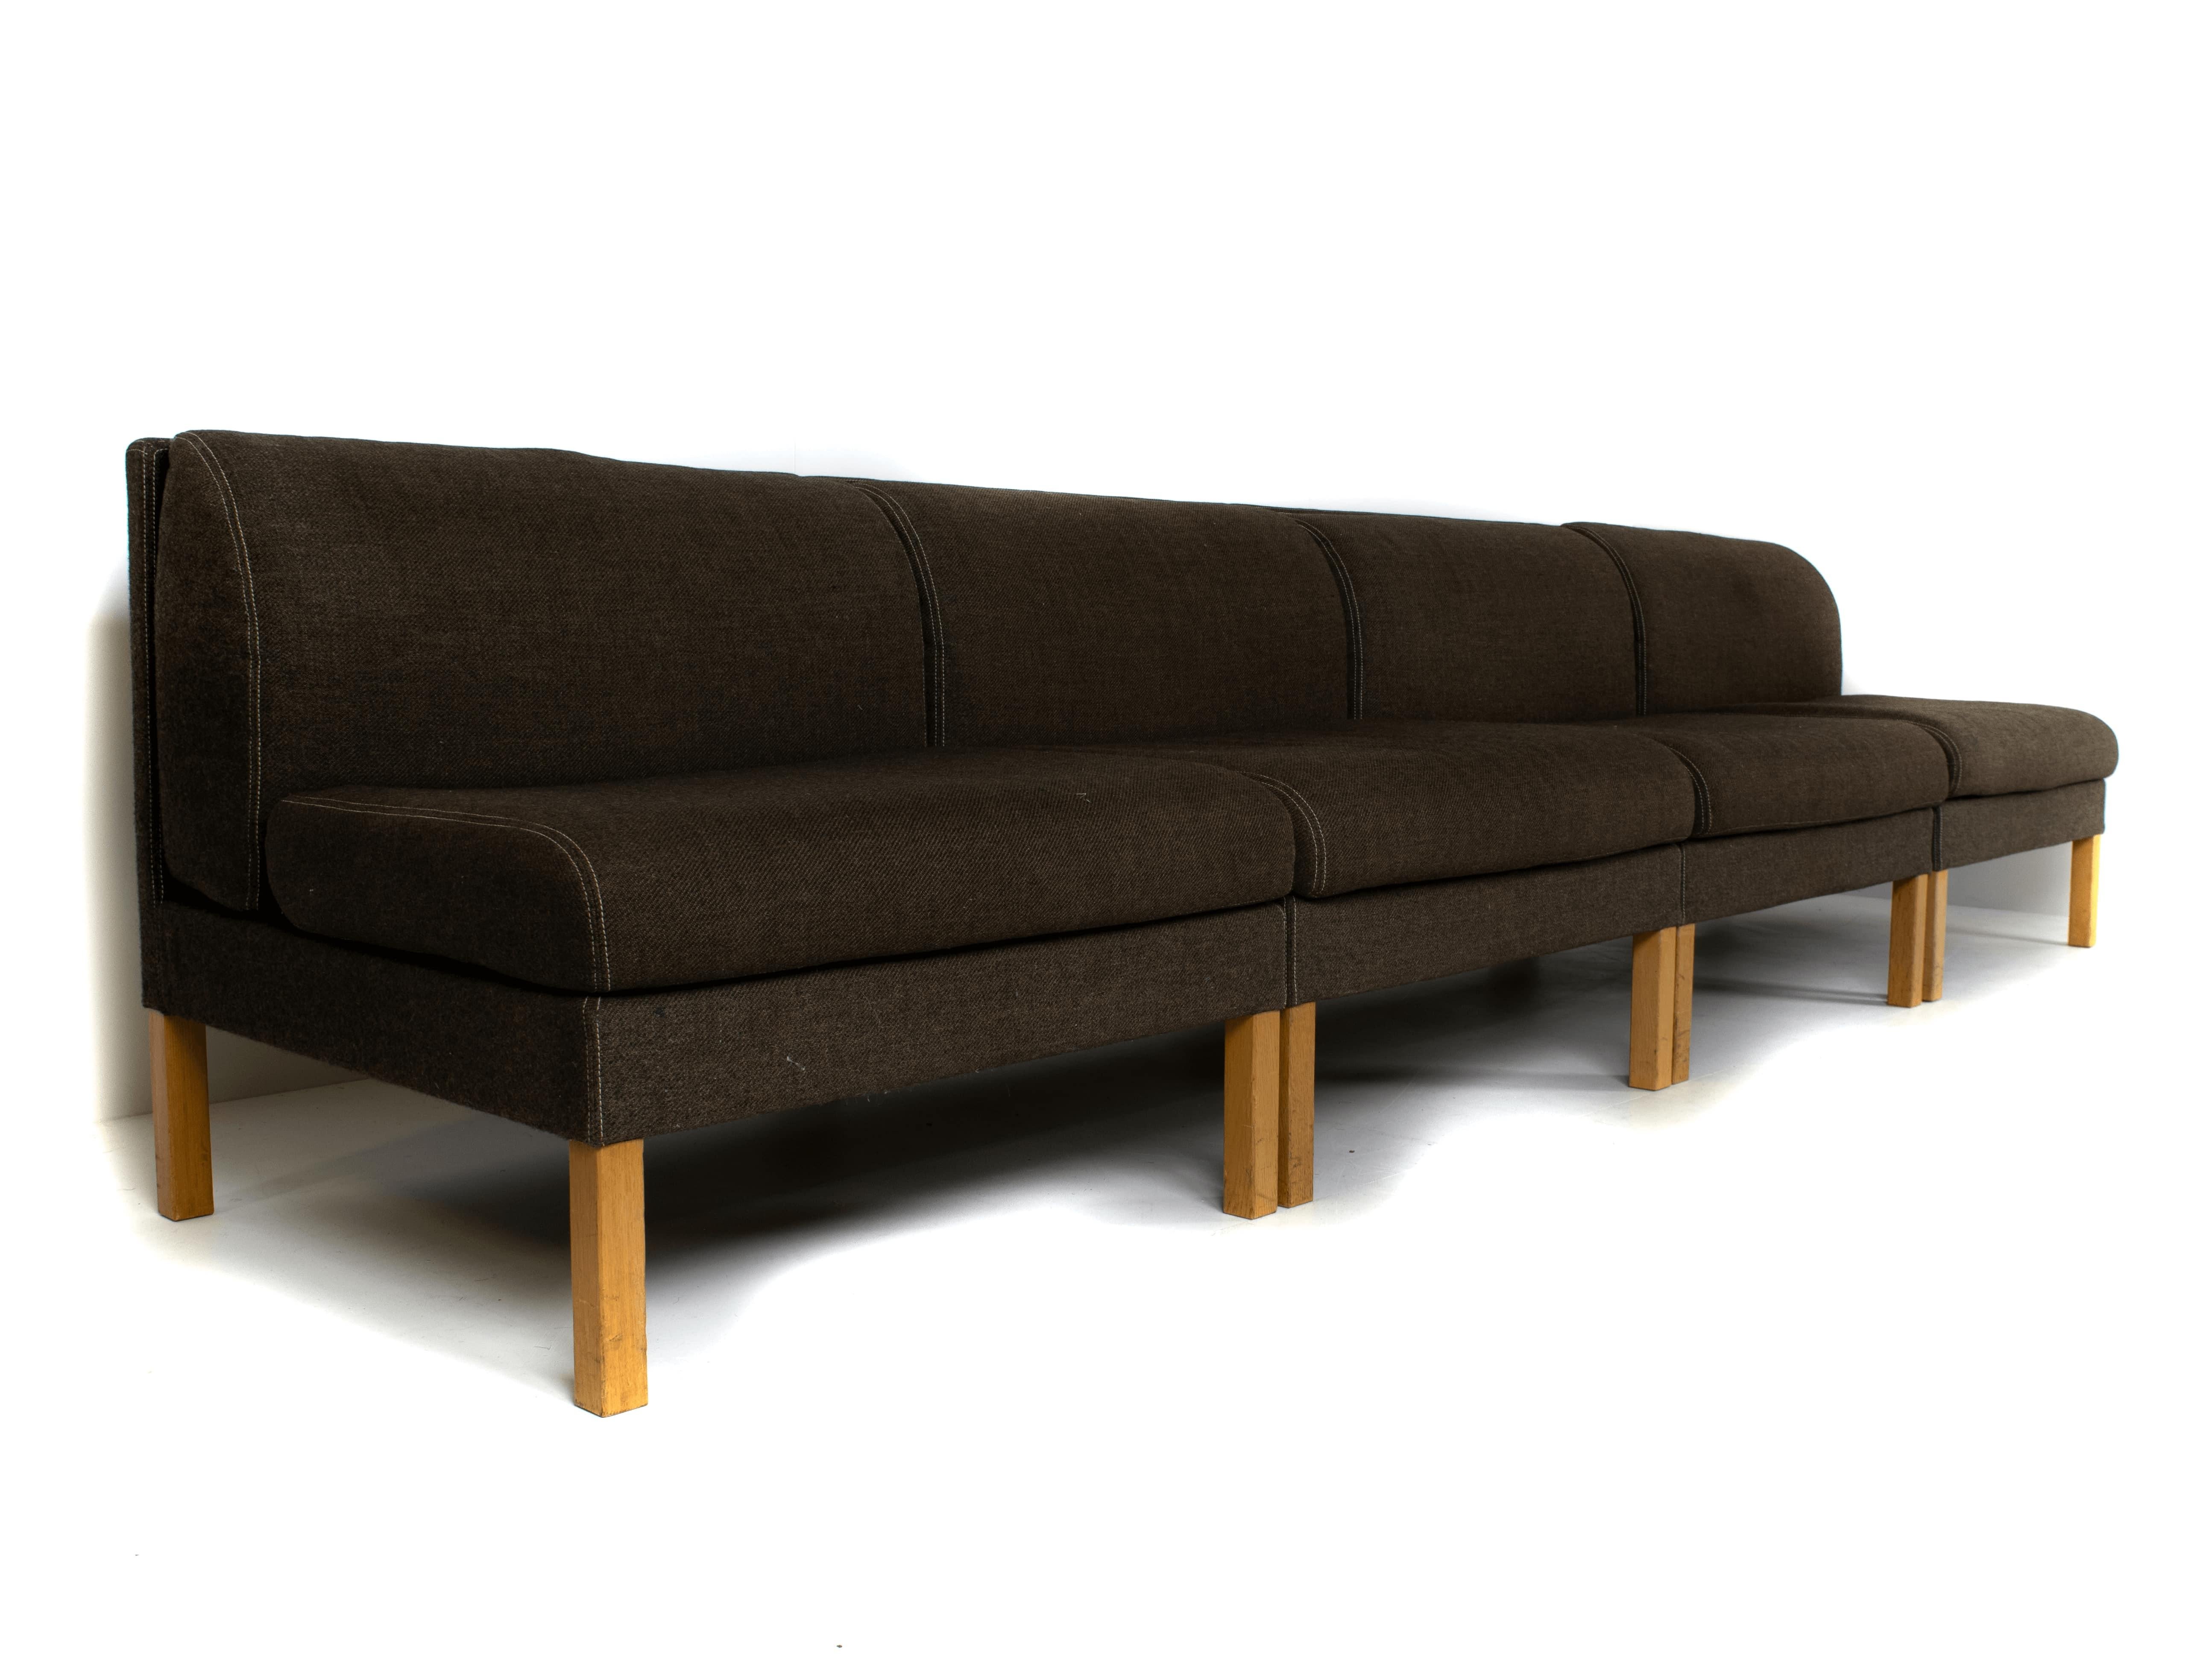 Bernt Petersen modulares Sofa in Eiche und Saga 180 Stoff aus Dänemark 1980. Dieses modulare Sofa kann in mehreren Positionen platziert werden, so dass insgesamt ein Sofa von ~316 cm entsteht. Der braun/graue Stoff ist in gutem Zustand mit nur